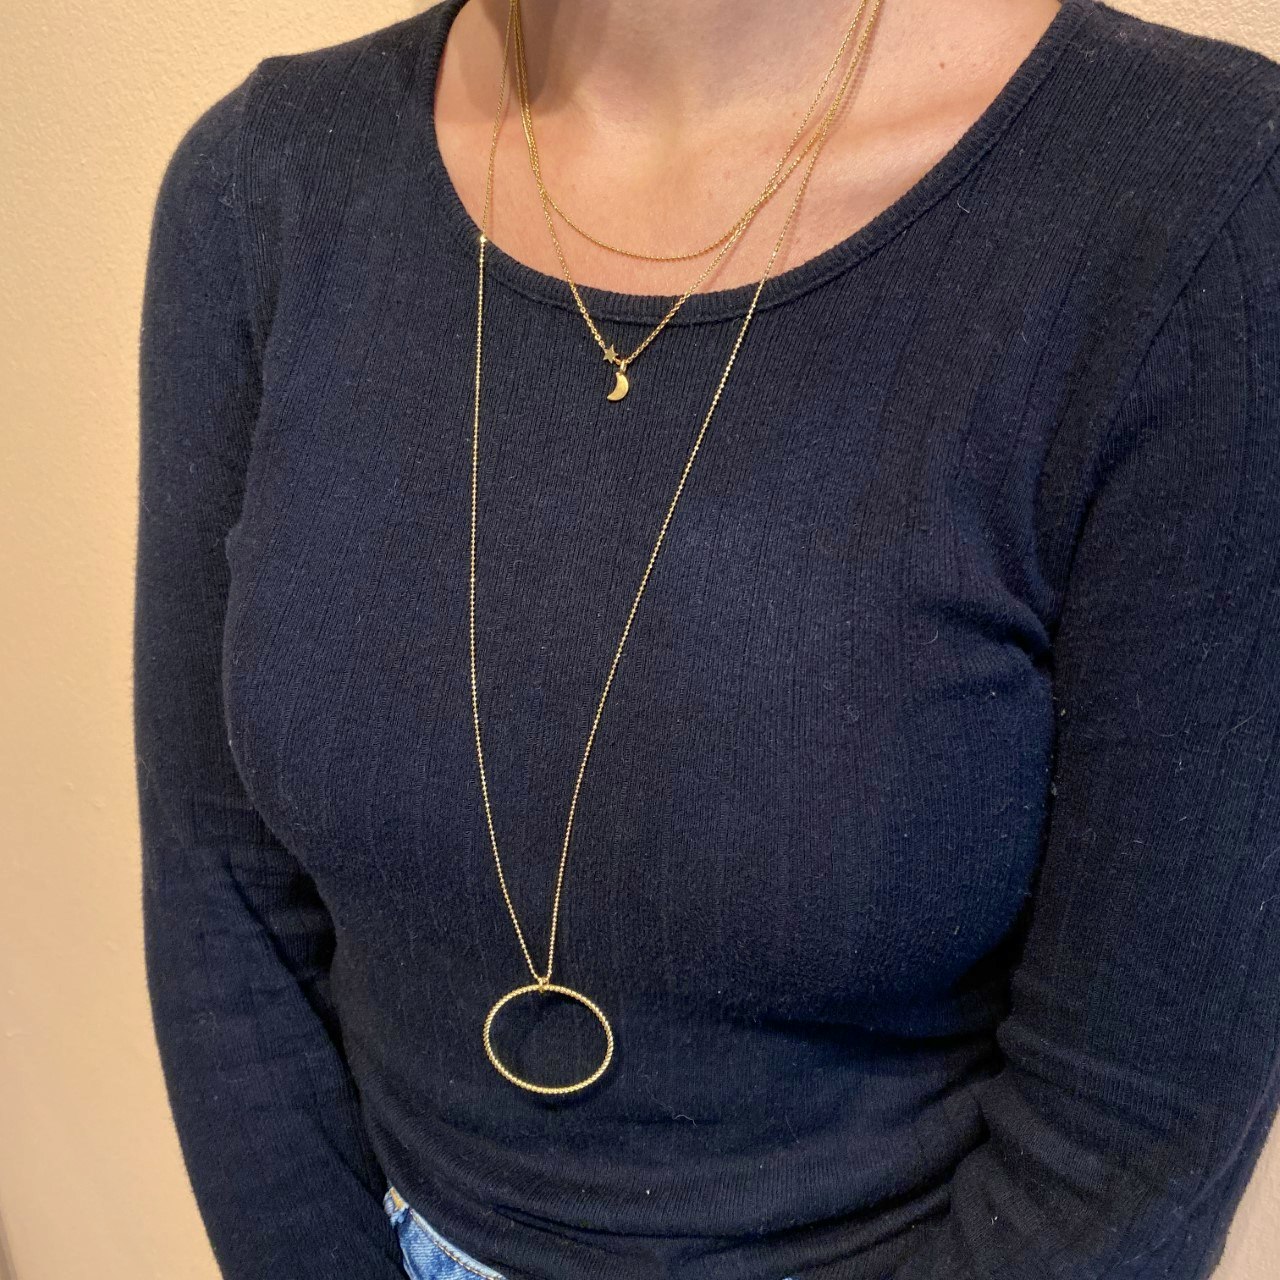 Luna Star necklace fra Pernille Corydon i Sølv Sterling 925